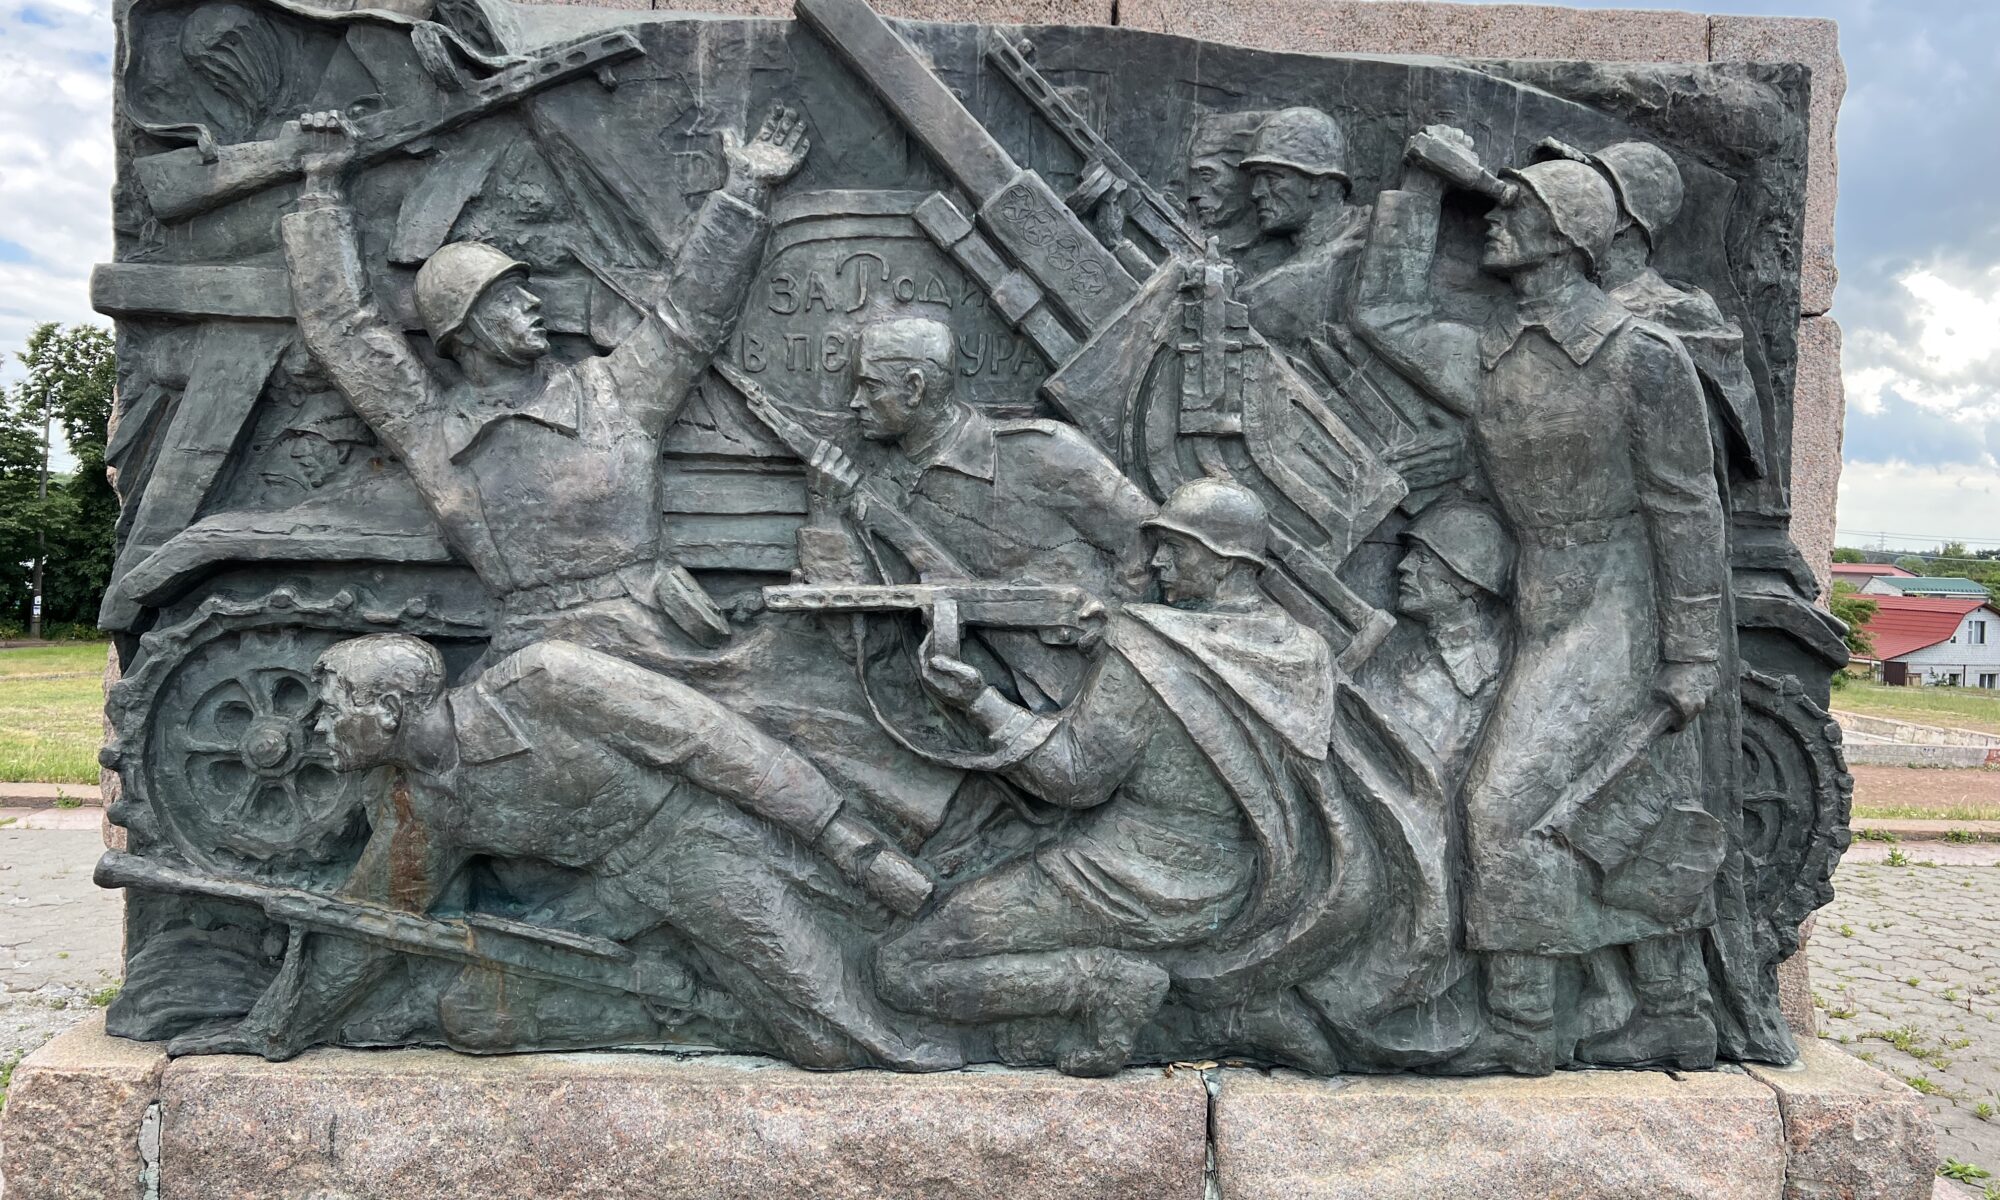 A monument to world war II in Chernihiv, Ukraine